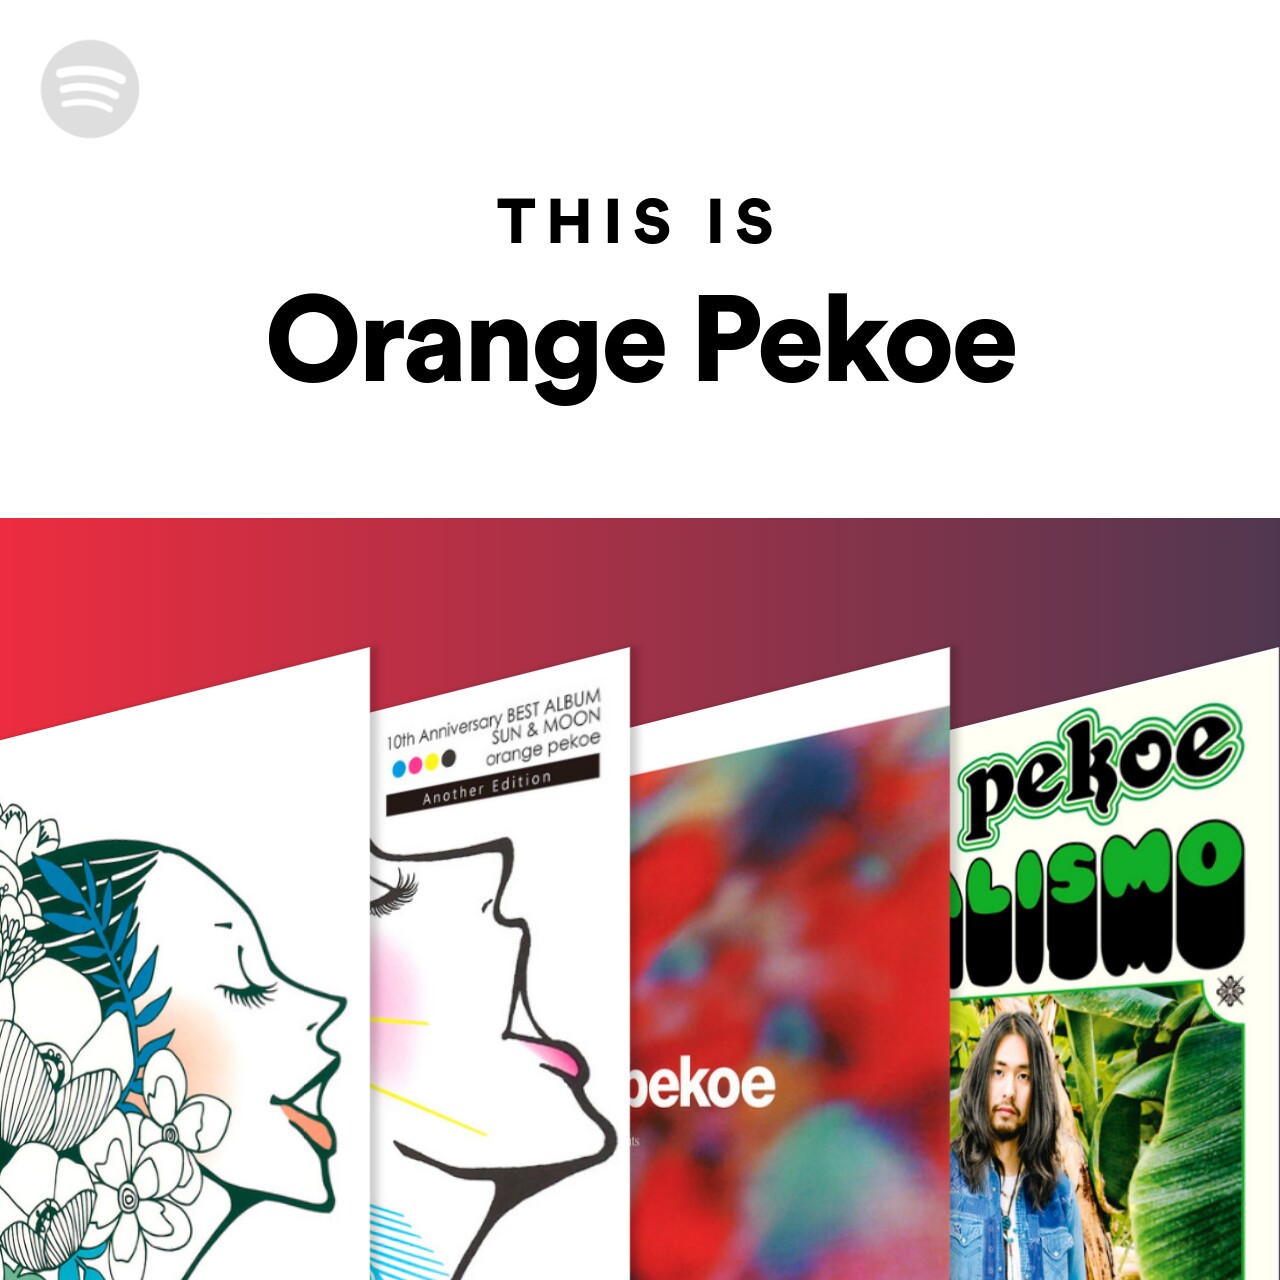 This Is Orange Pekoe